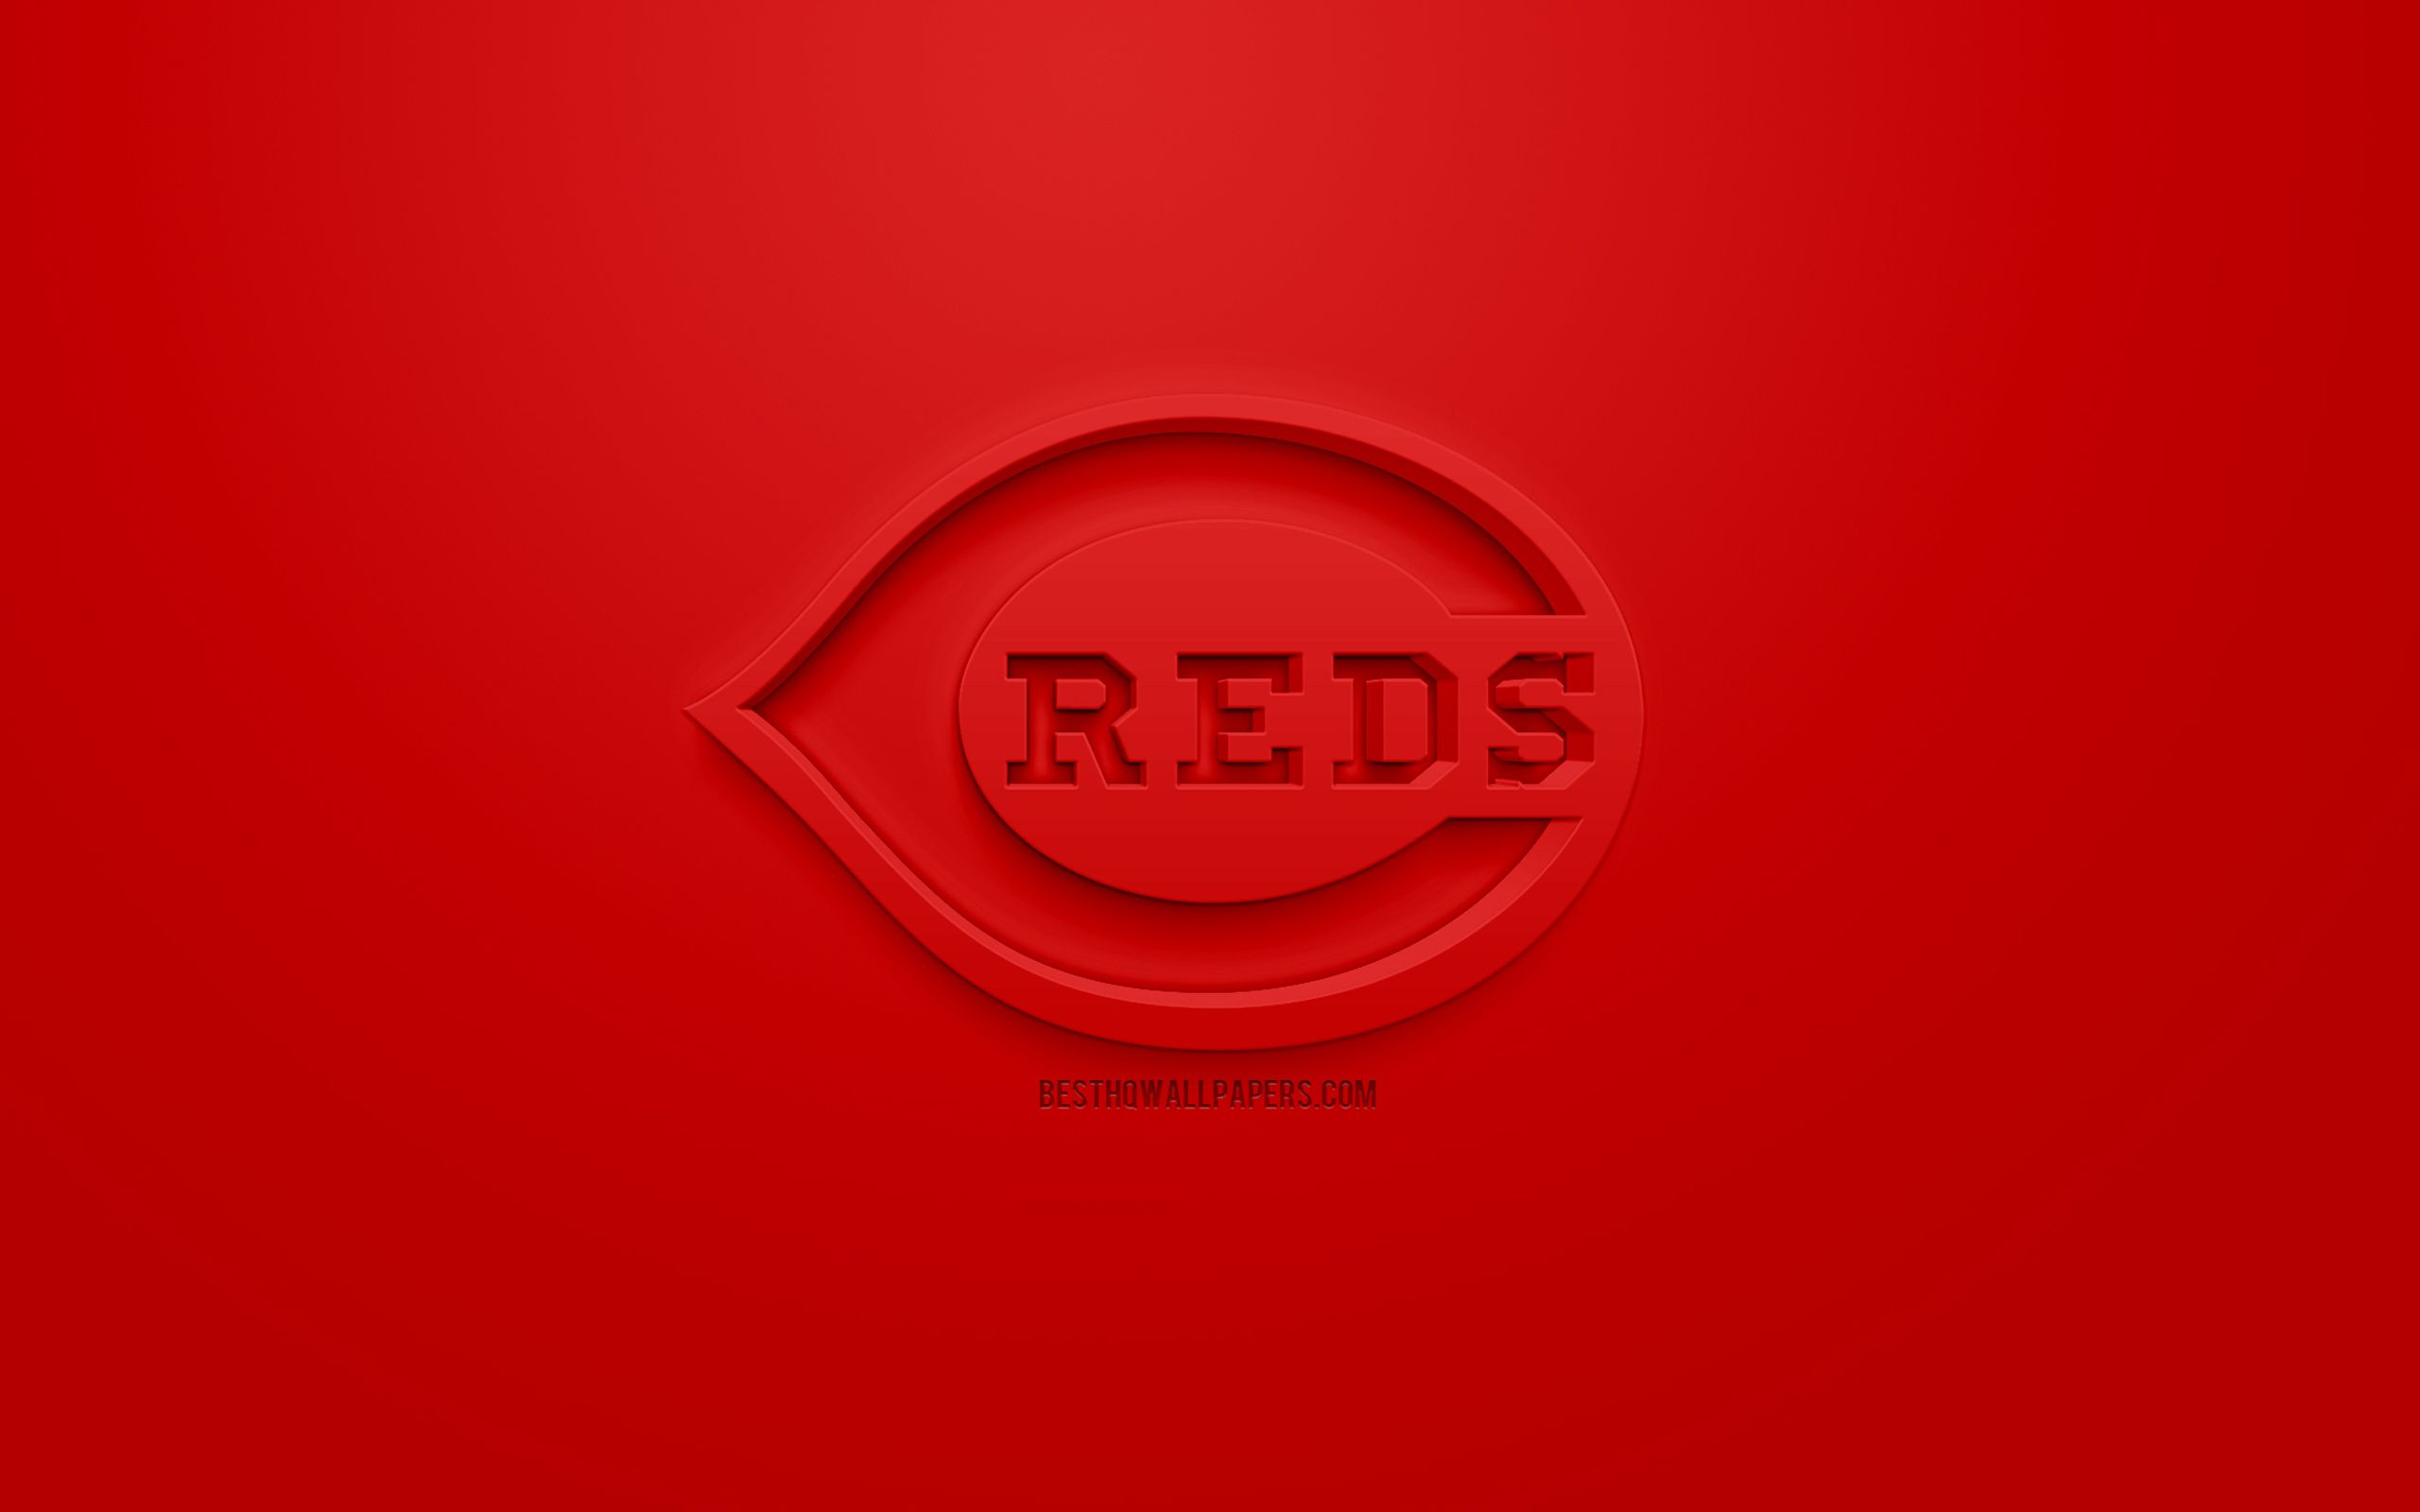 Download wallpaper Cincinnati Reds, American baseball club